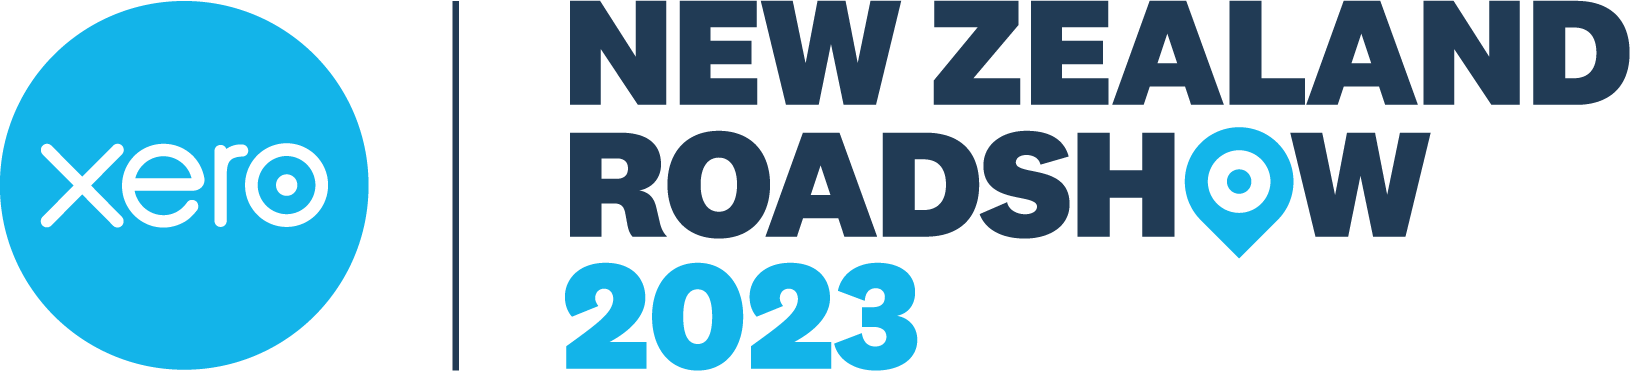 Xero New Zealand Roadshow 2023 logo